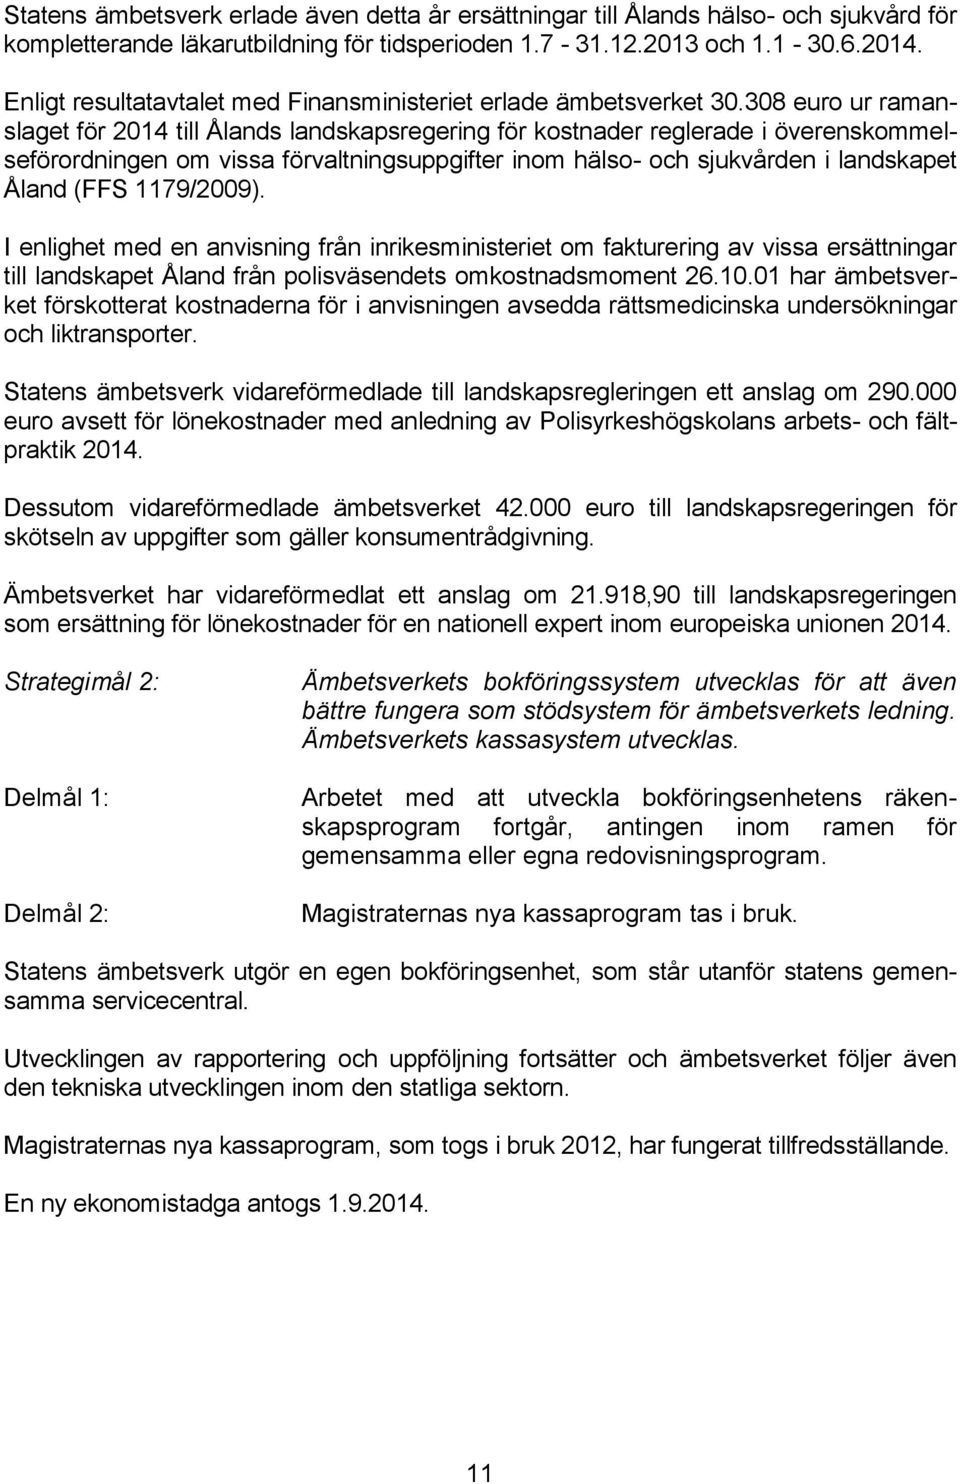 308 euro ur ramanslaget för 2014 till Ålands landskapsregering för kostnader reglerade i överenskommelseförordningen om vissa förvaltningsuppgifter inom hälso- och sjukvården i landskapet Åland (FFS